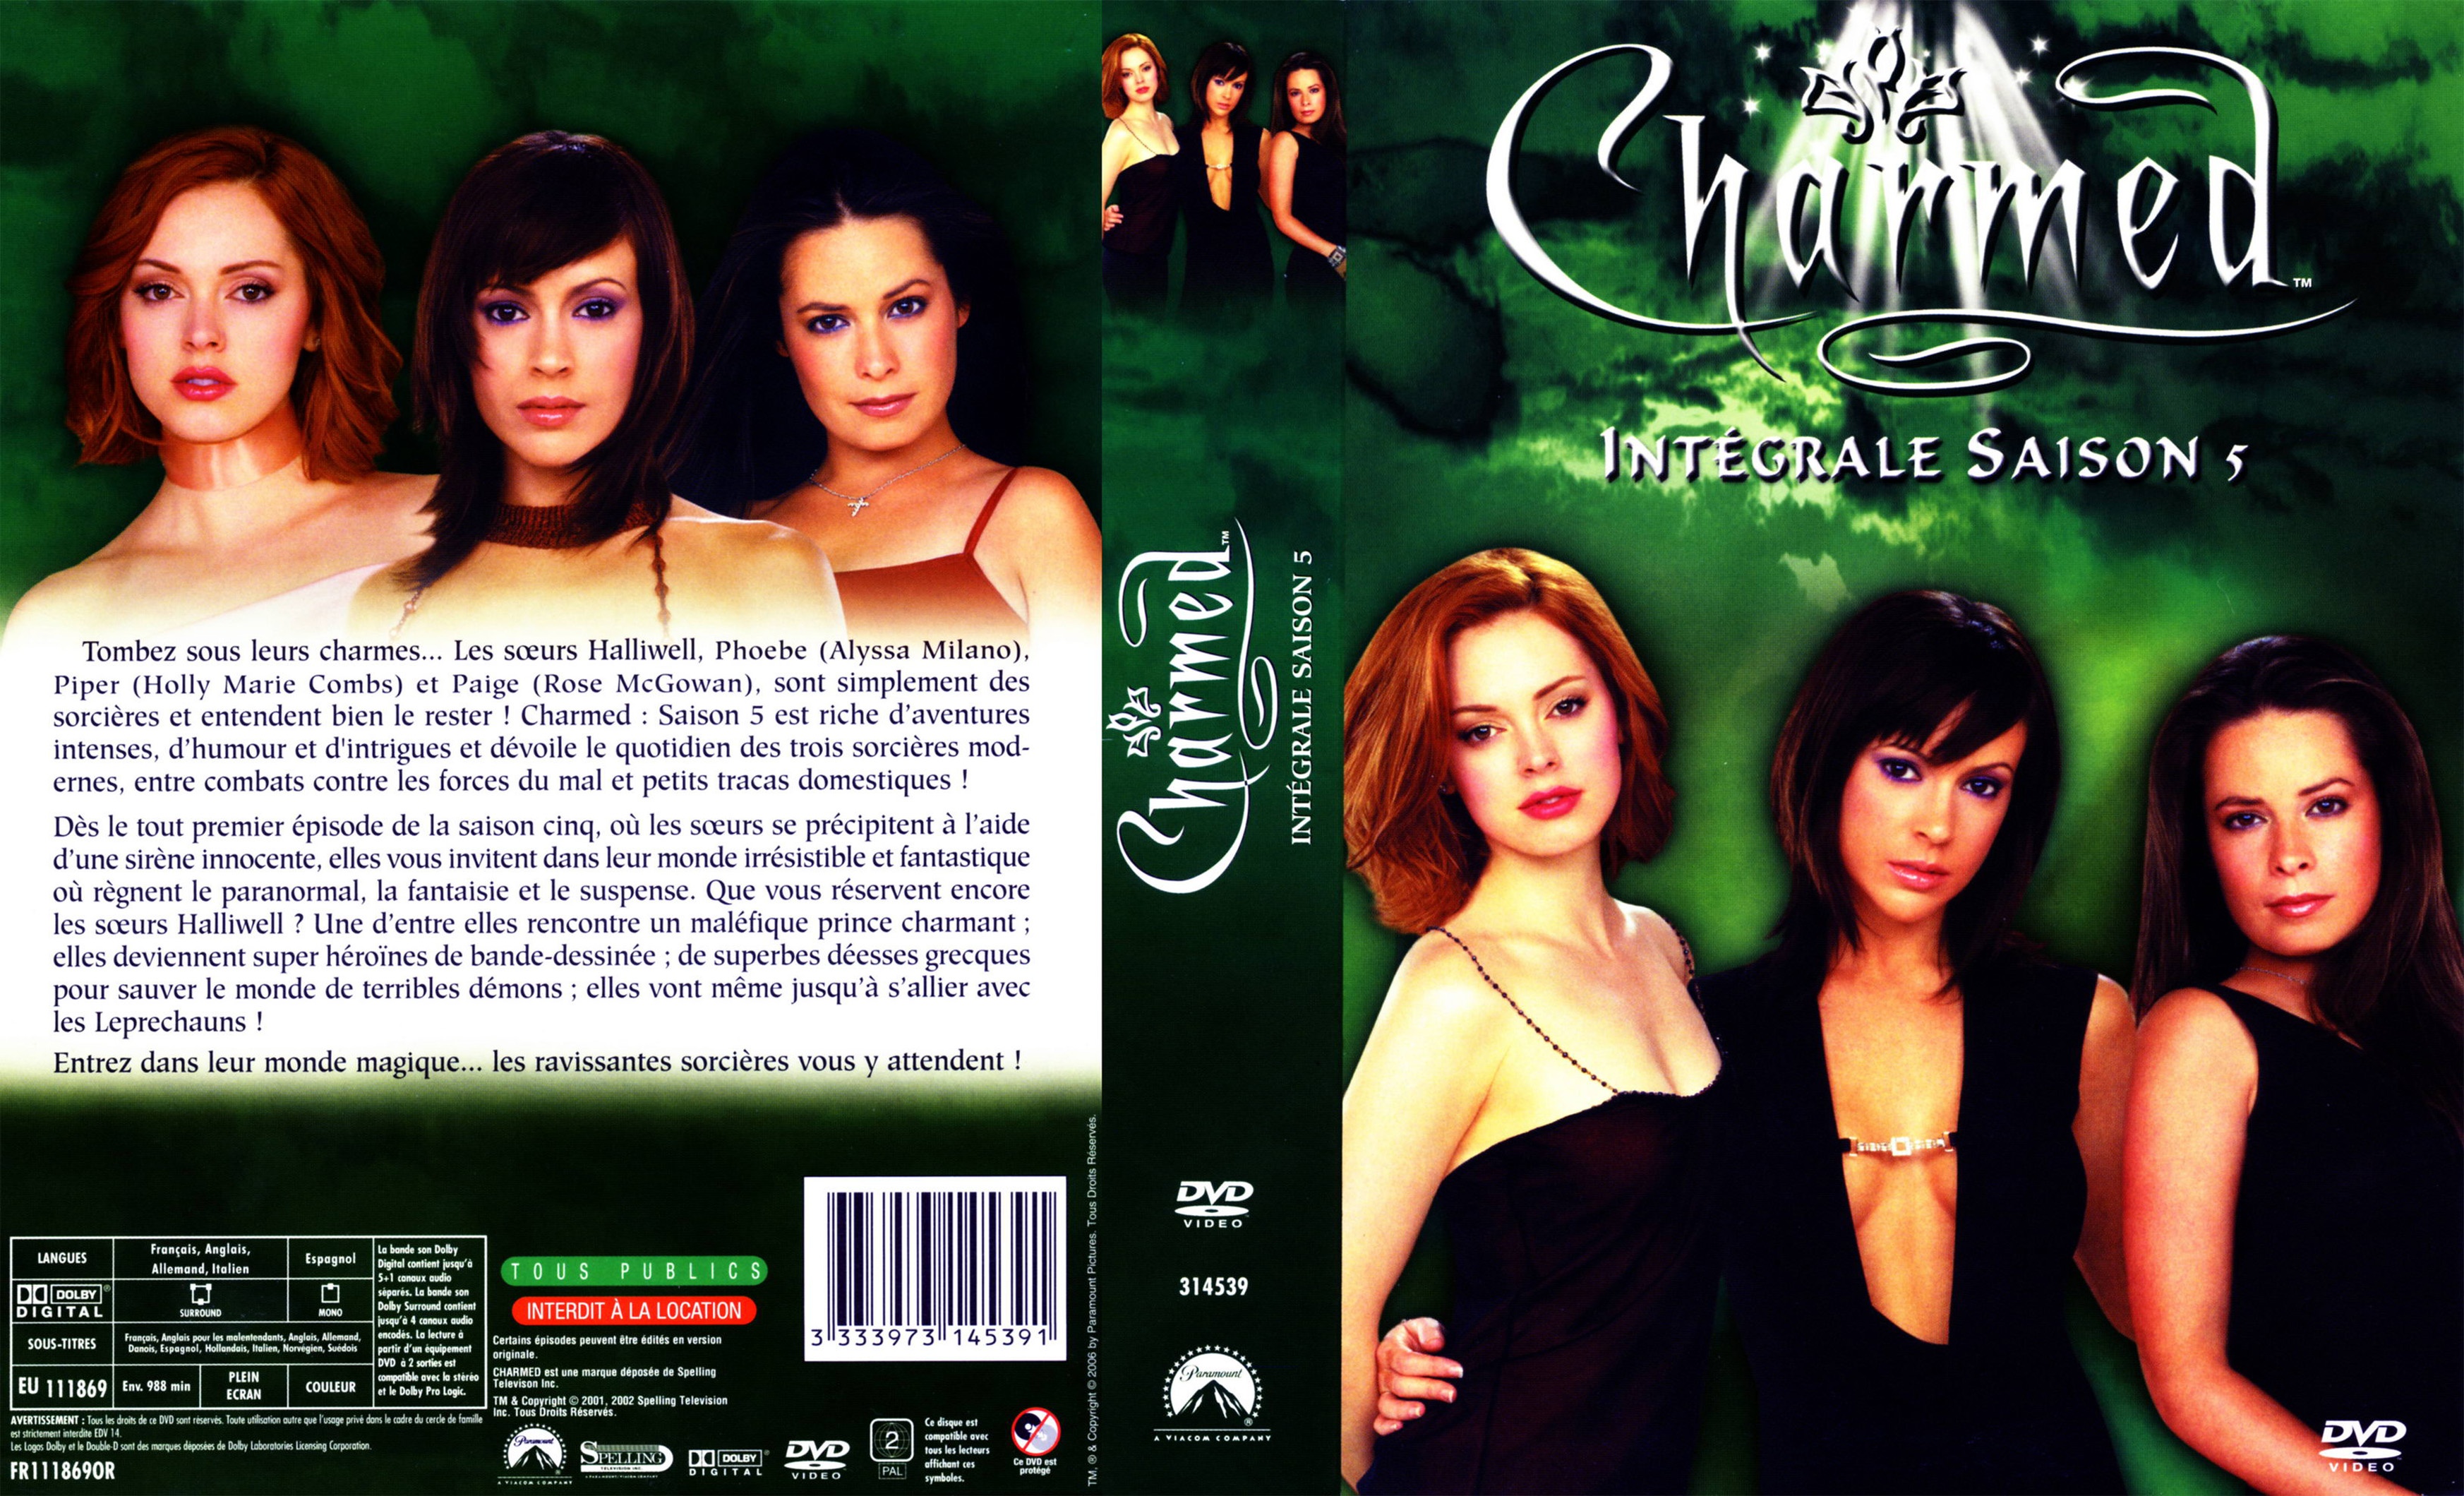 Jaquette DVD Charmed Saison 5 COFFRET v2